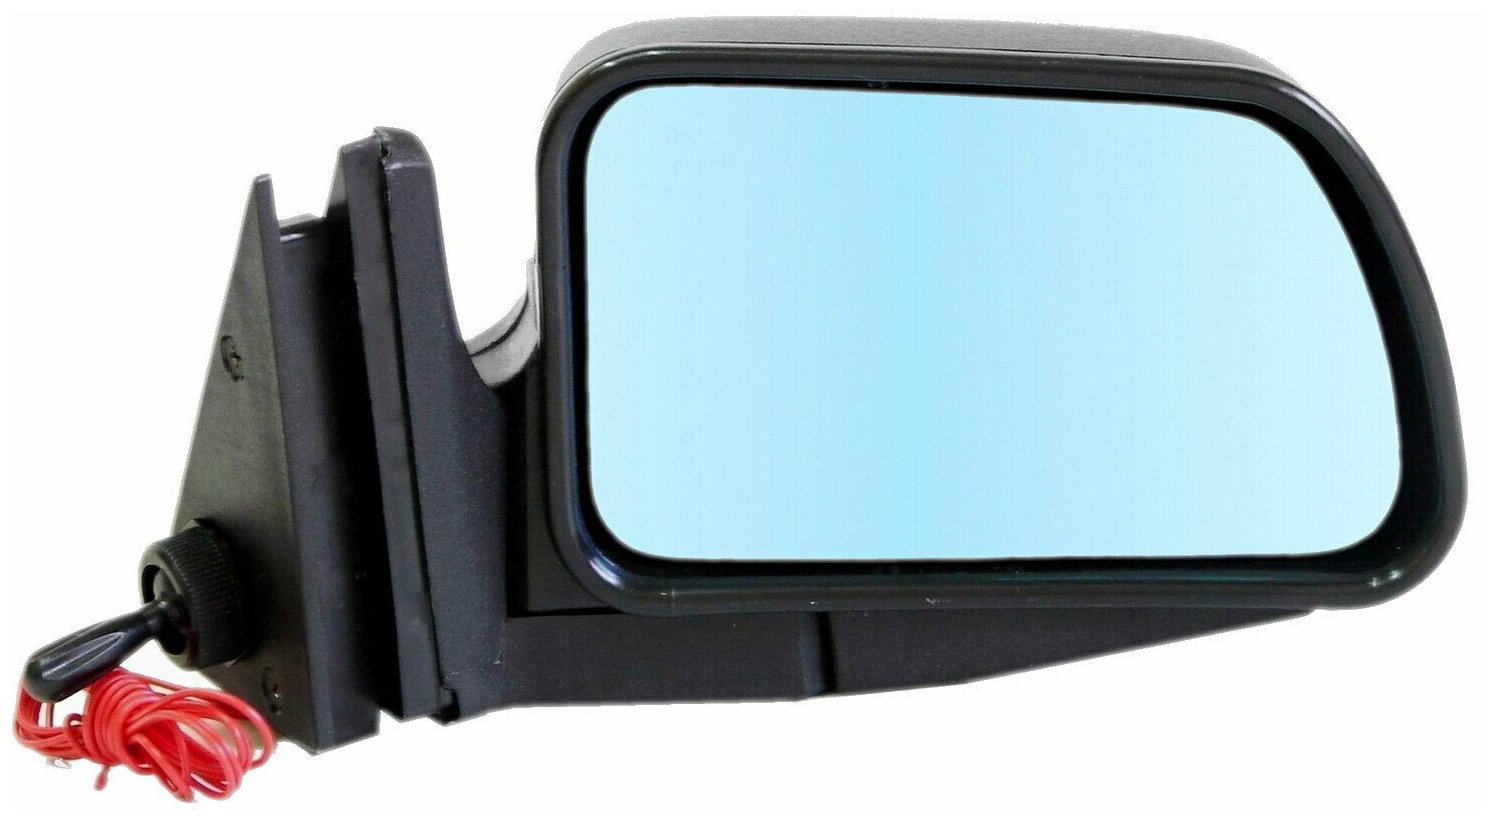 Зеркало боковое правое для ВАЗ-2104, 2105, 2107, модель Р-5 ГО с тросовым приводом регулировки, с сферическим противоослепляющим отражателем голубого тона, с системой обогрева.